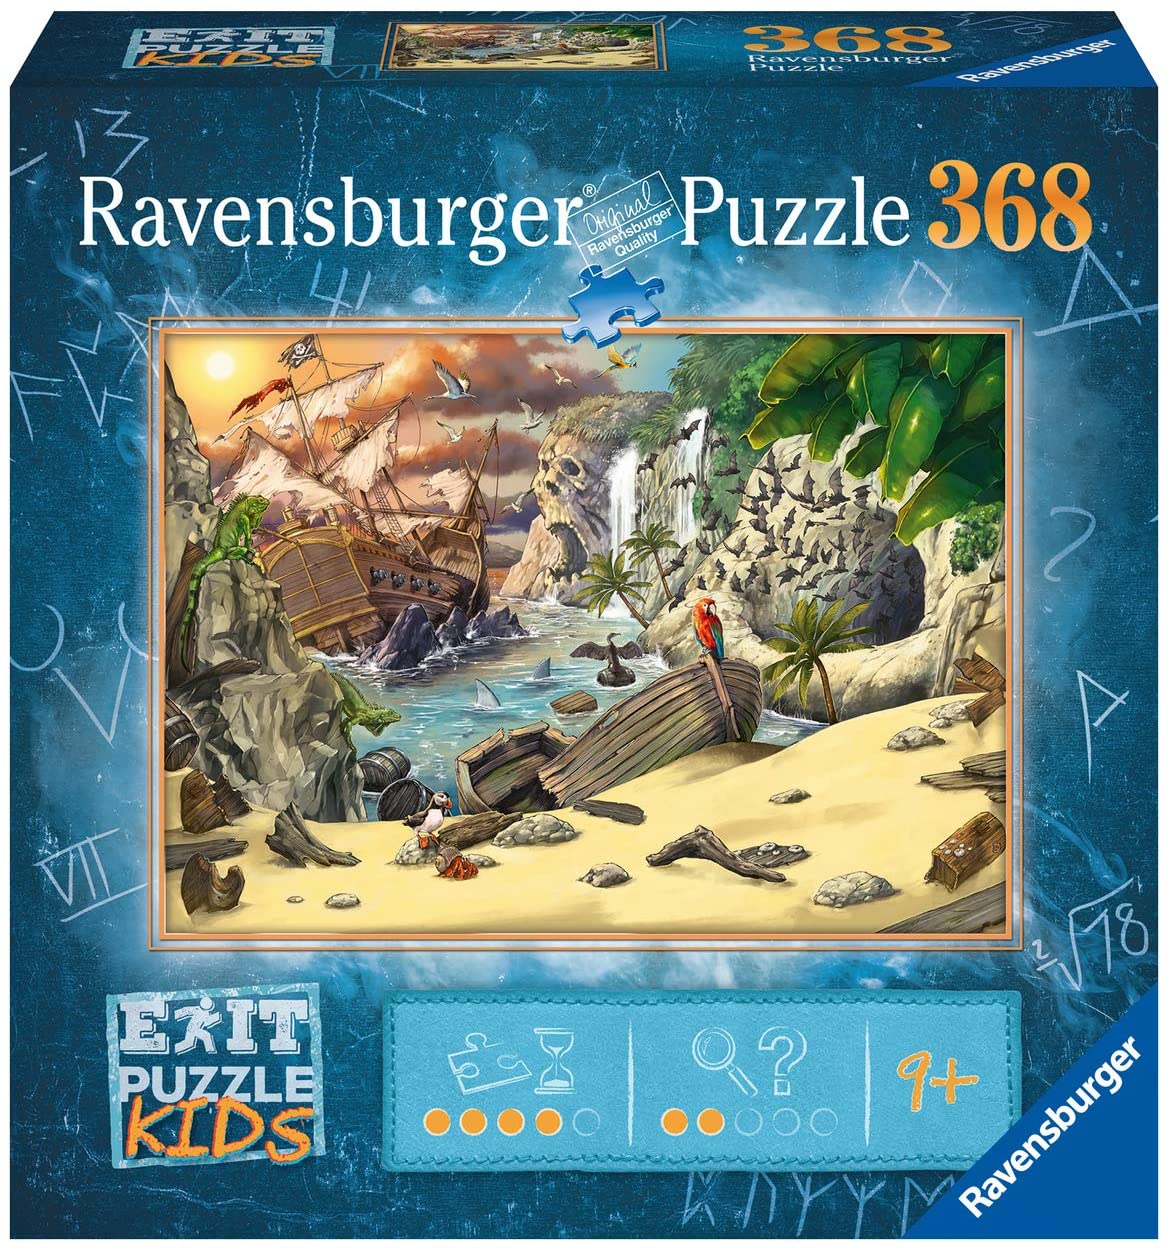 Exit Puzzle Kids, Pirates Adventure by Alexander Jung, 368 Piece Puzzle